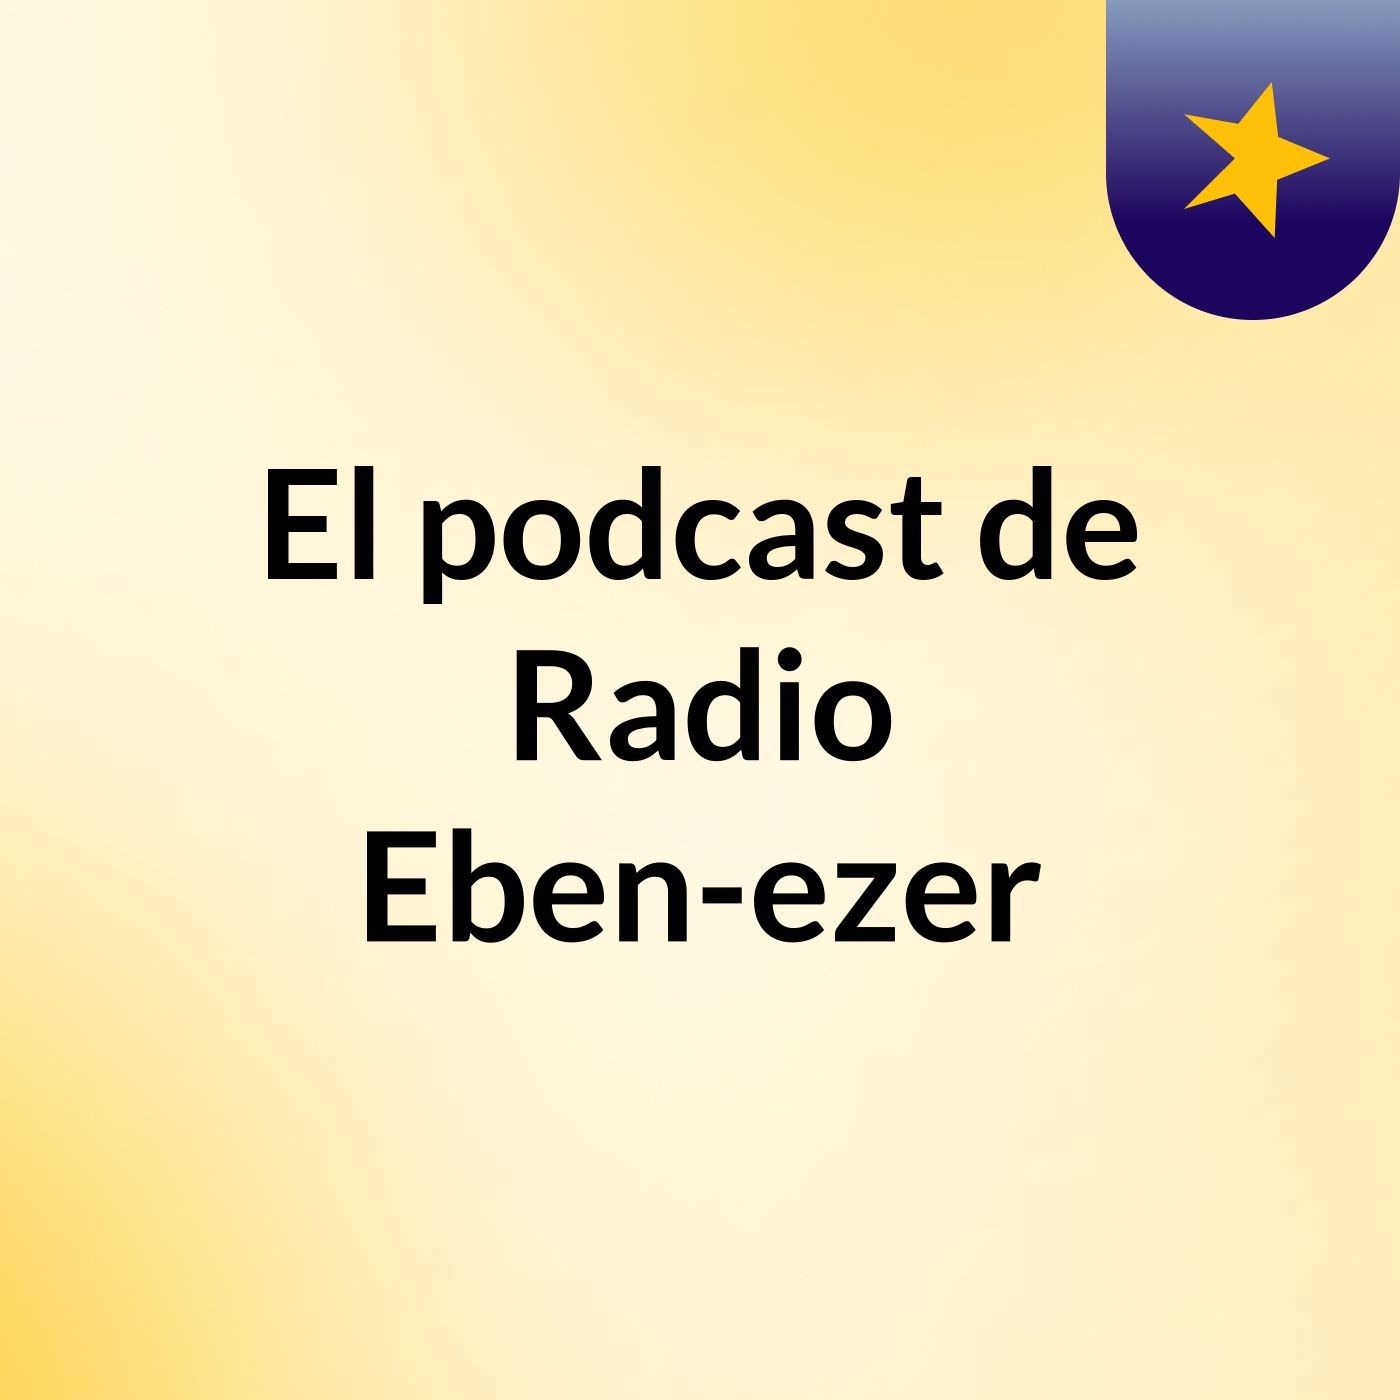 El podcast de Radio Eben-ezer